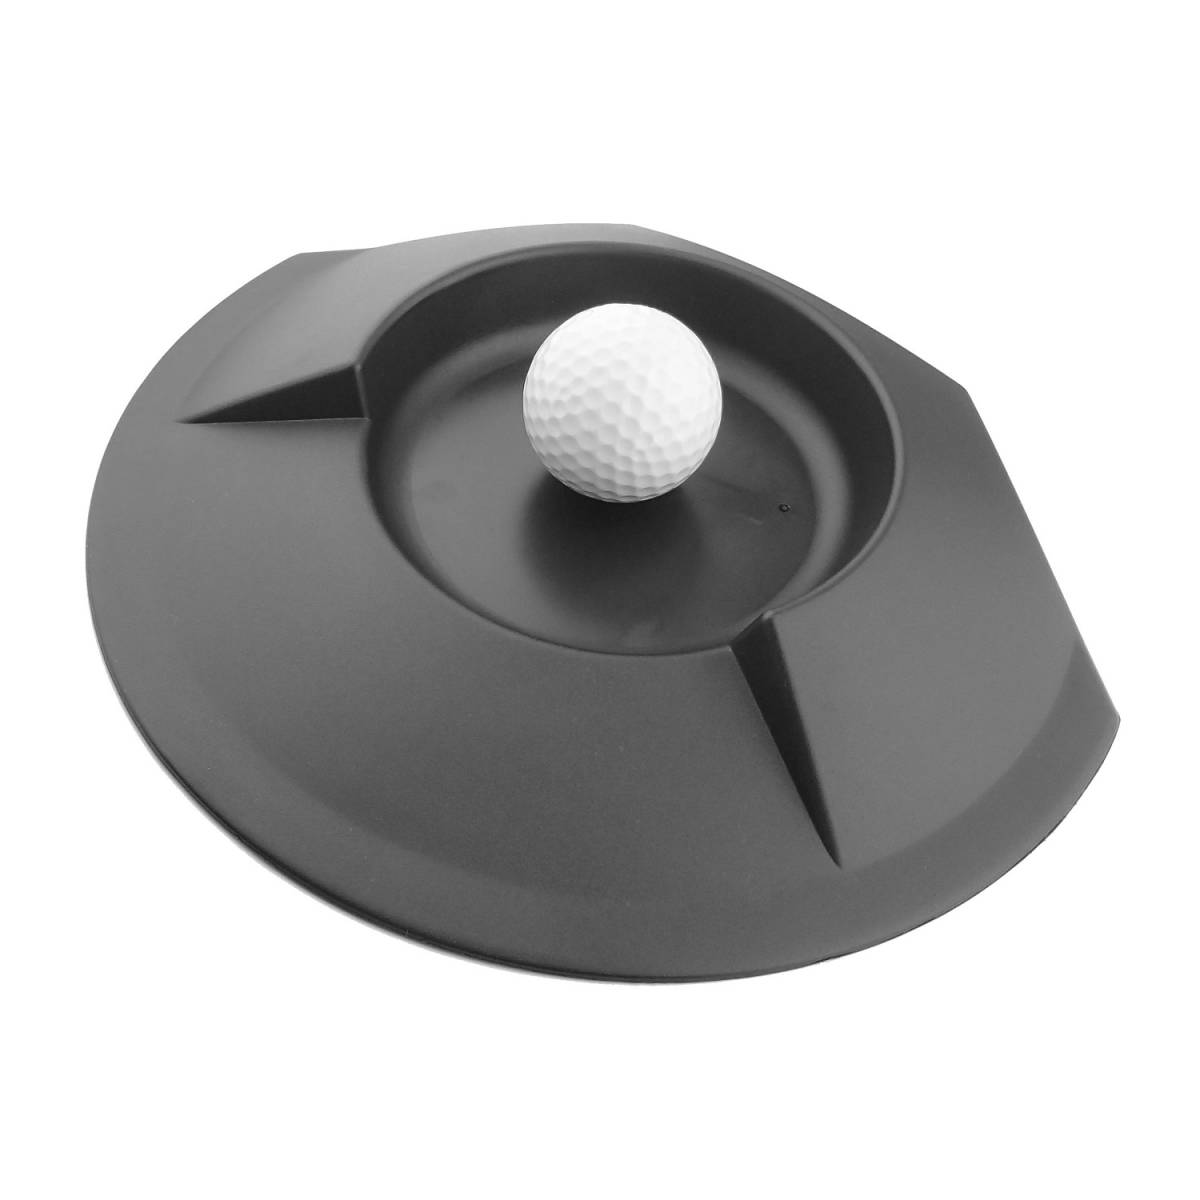 ゴルフ パターカップ パター練習器具 パターホール パッティングカップ パタープレート_画像2